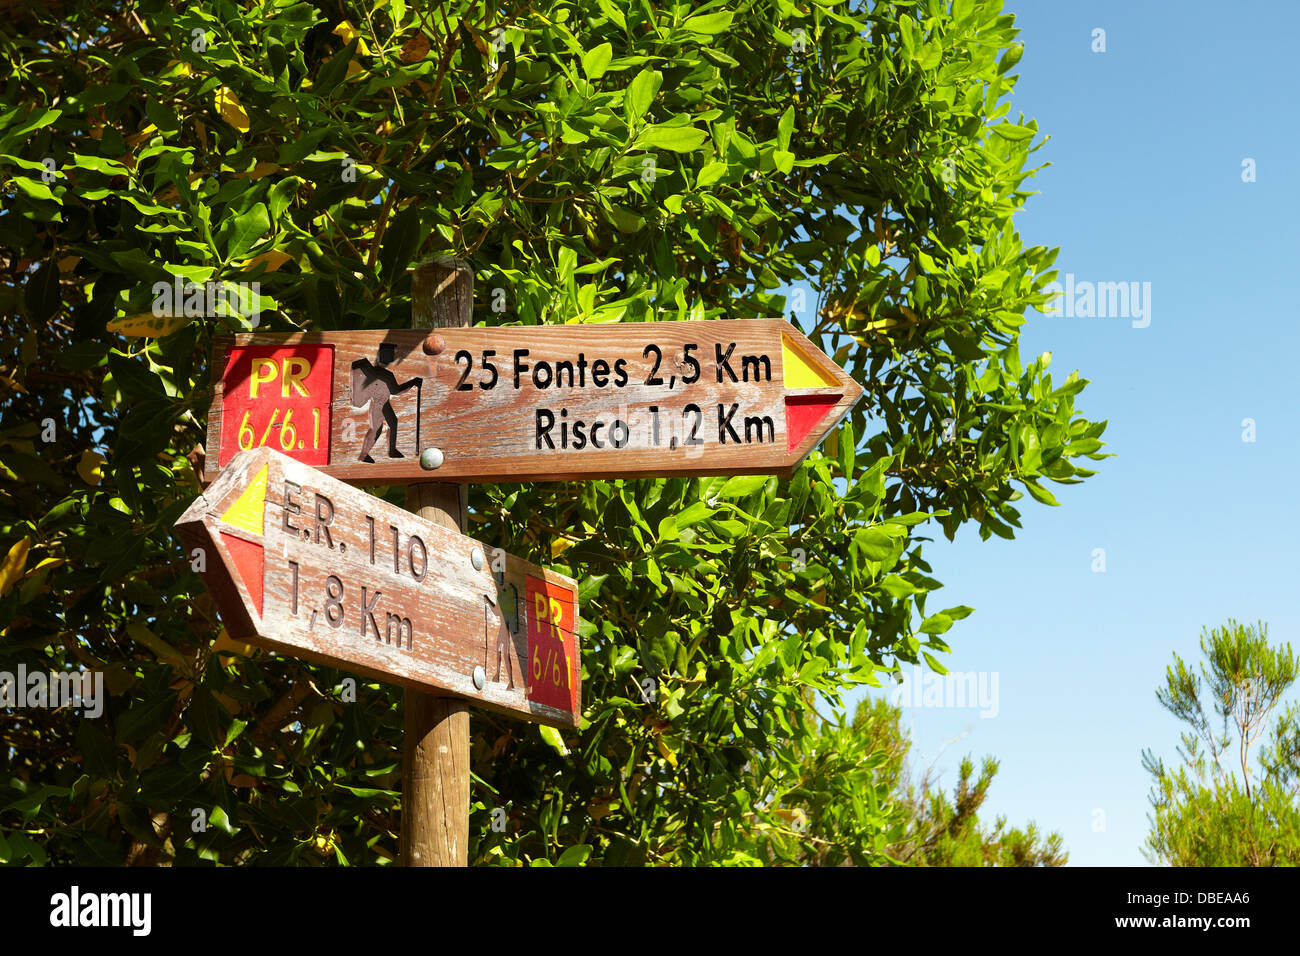 Un cartel a 25 Fontes y Risco Levada, Rabacal, la isla de Madeira, Portugal Foto de stock